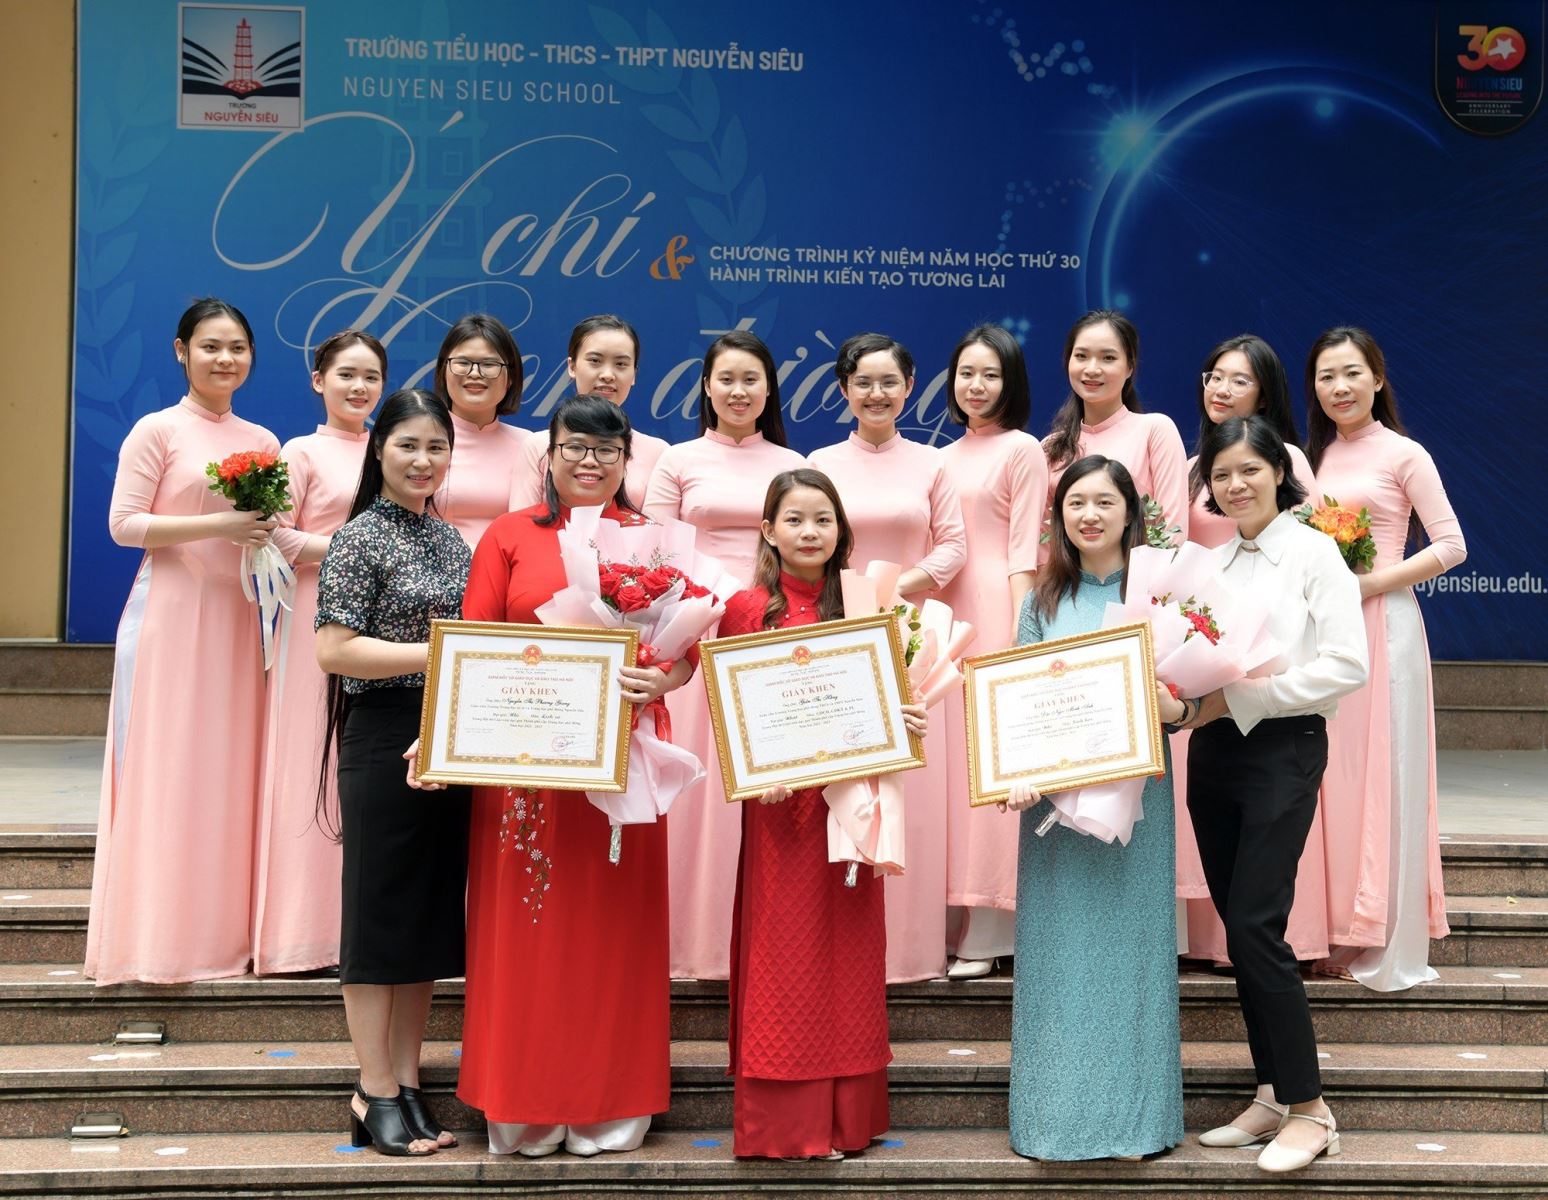 Nguyễn Siêu đạt 1 giải Nhất, 2 giải Nhì Hội thi giáo viên giỏi cấp THPT